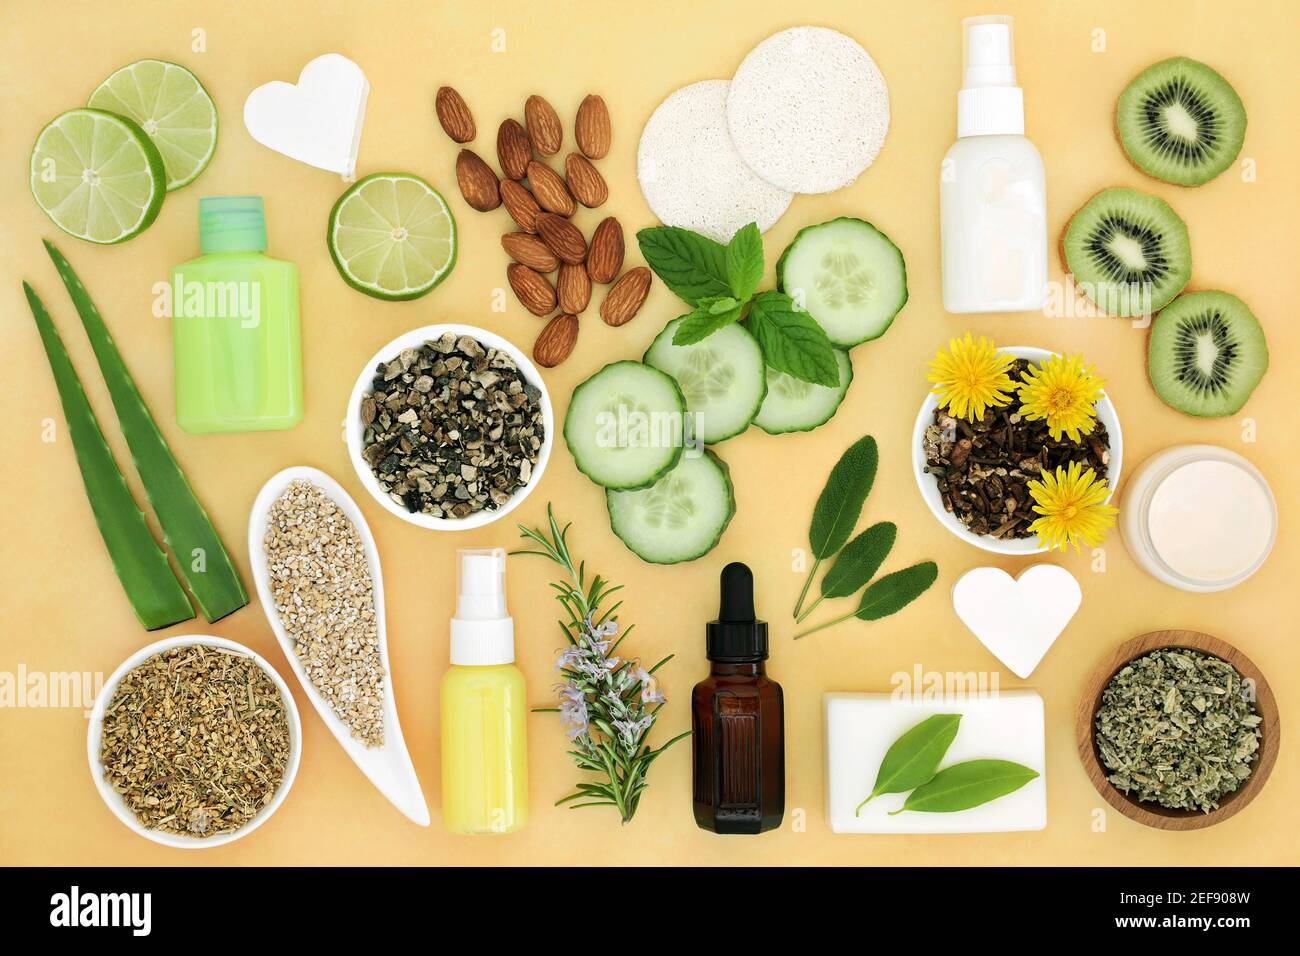 Soins de santé naturels pour les traitements de la peau avec des ingrédients utilisés pour traiter les maux de peau, y compris les coups de soleil, l'acné, le psoriasis et l'eczéma. Banque D'Images